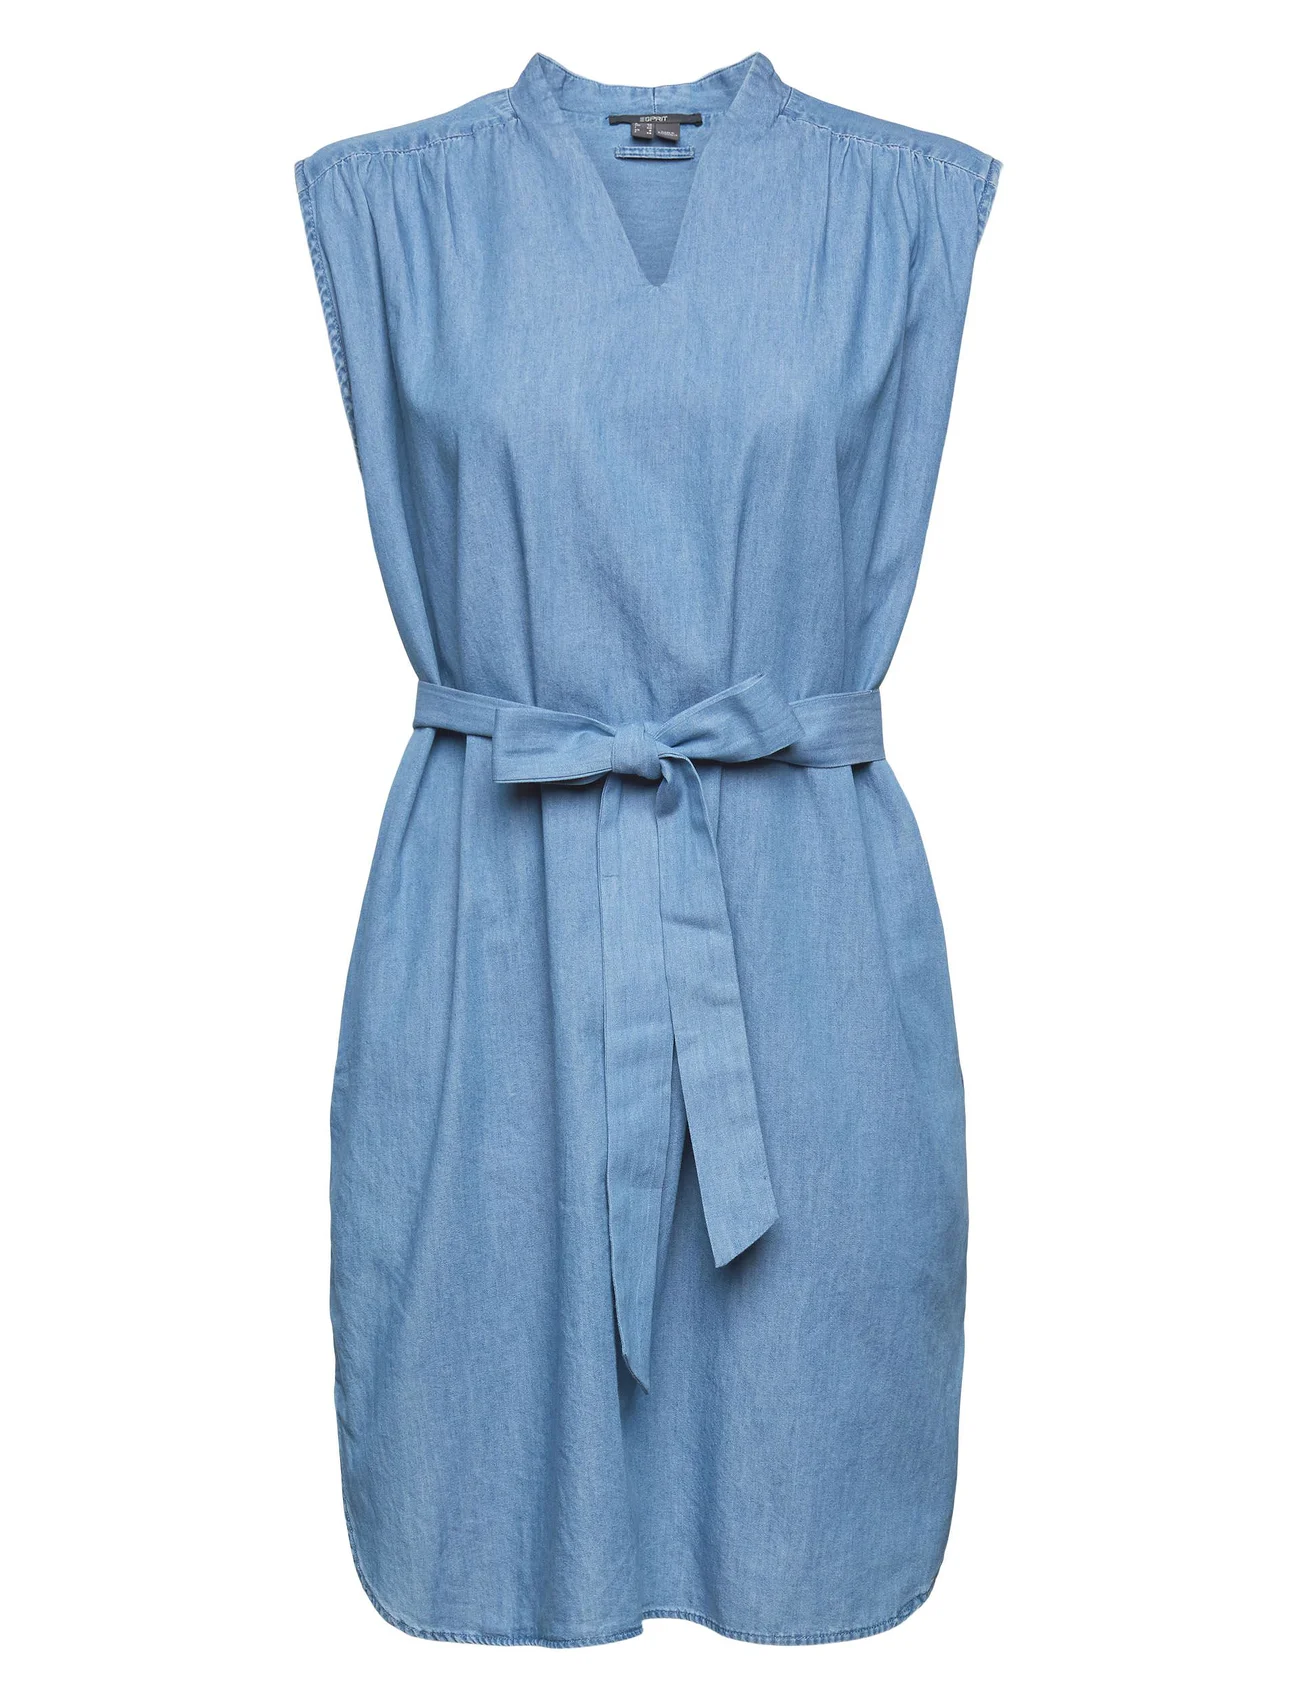 Esprit Collection - Denim-effect dress - overhemdjurken - blue medium wash - 0